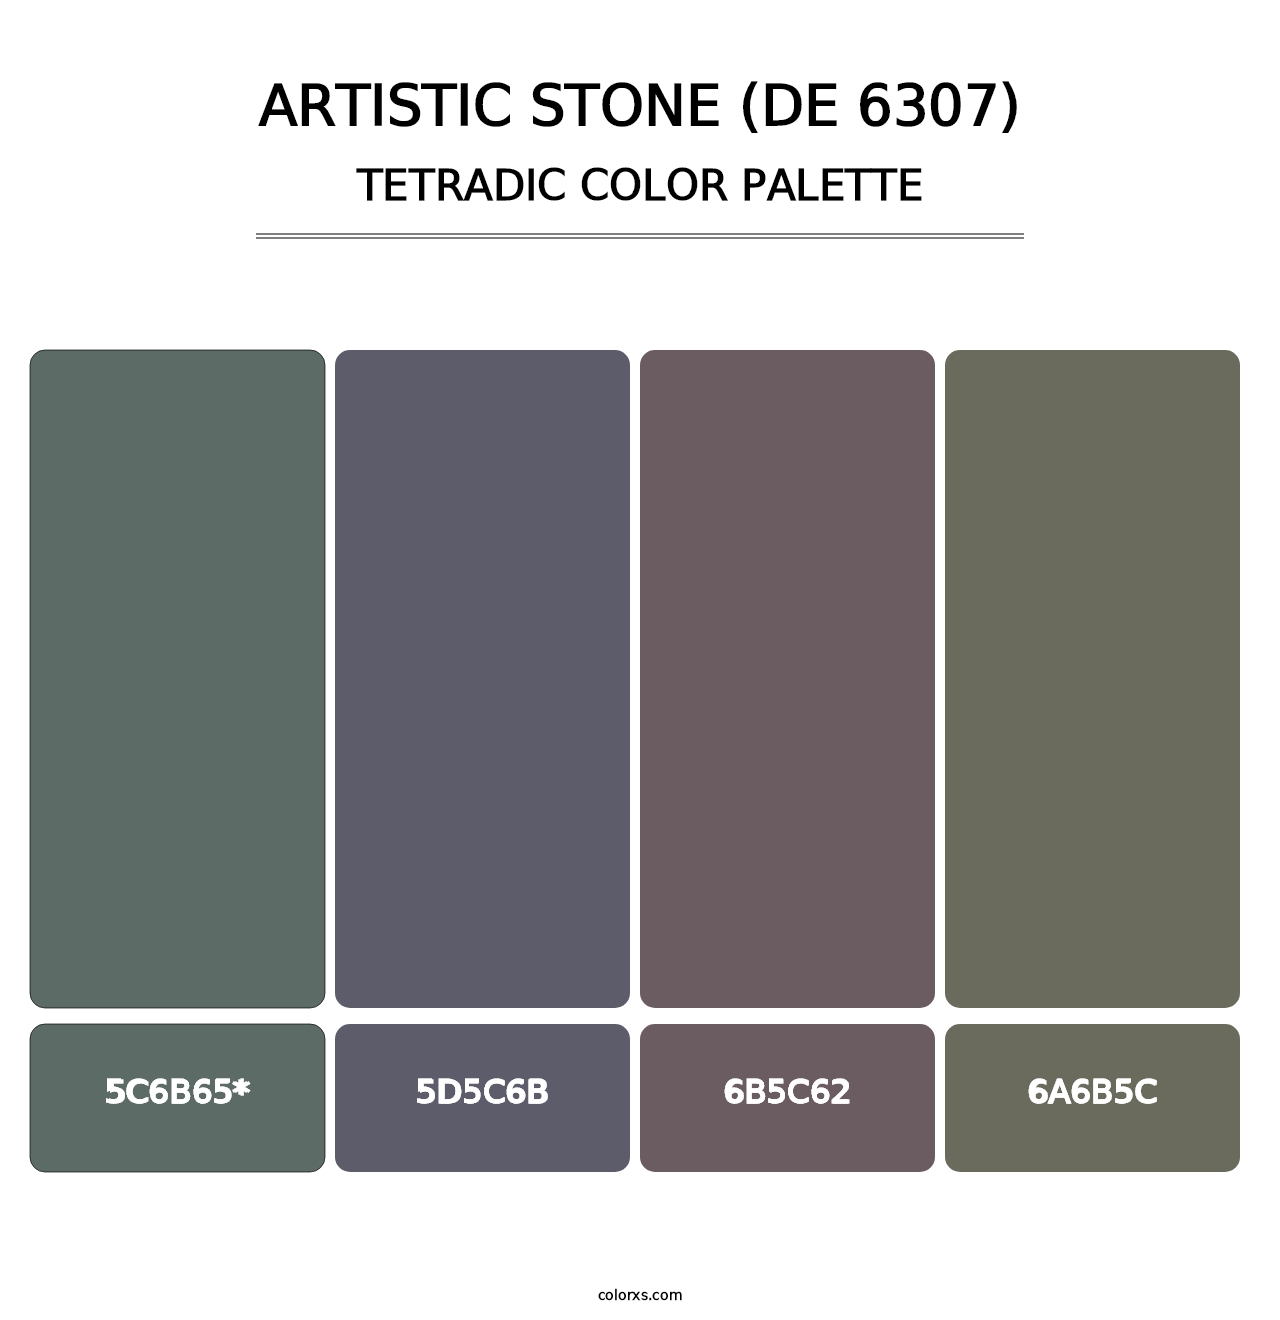 Artistic Stone (DE 6307) - Tetradic Color Palette